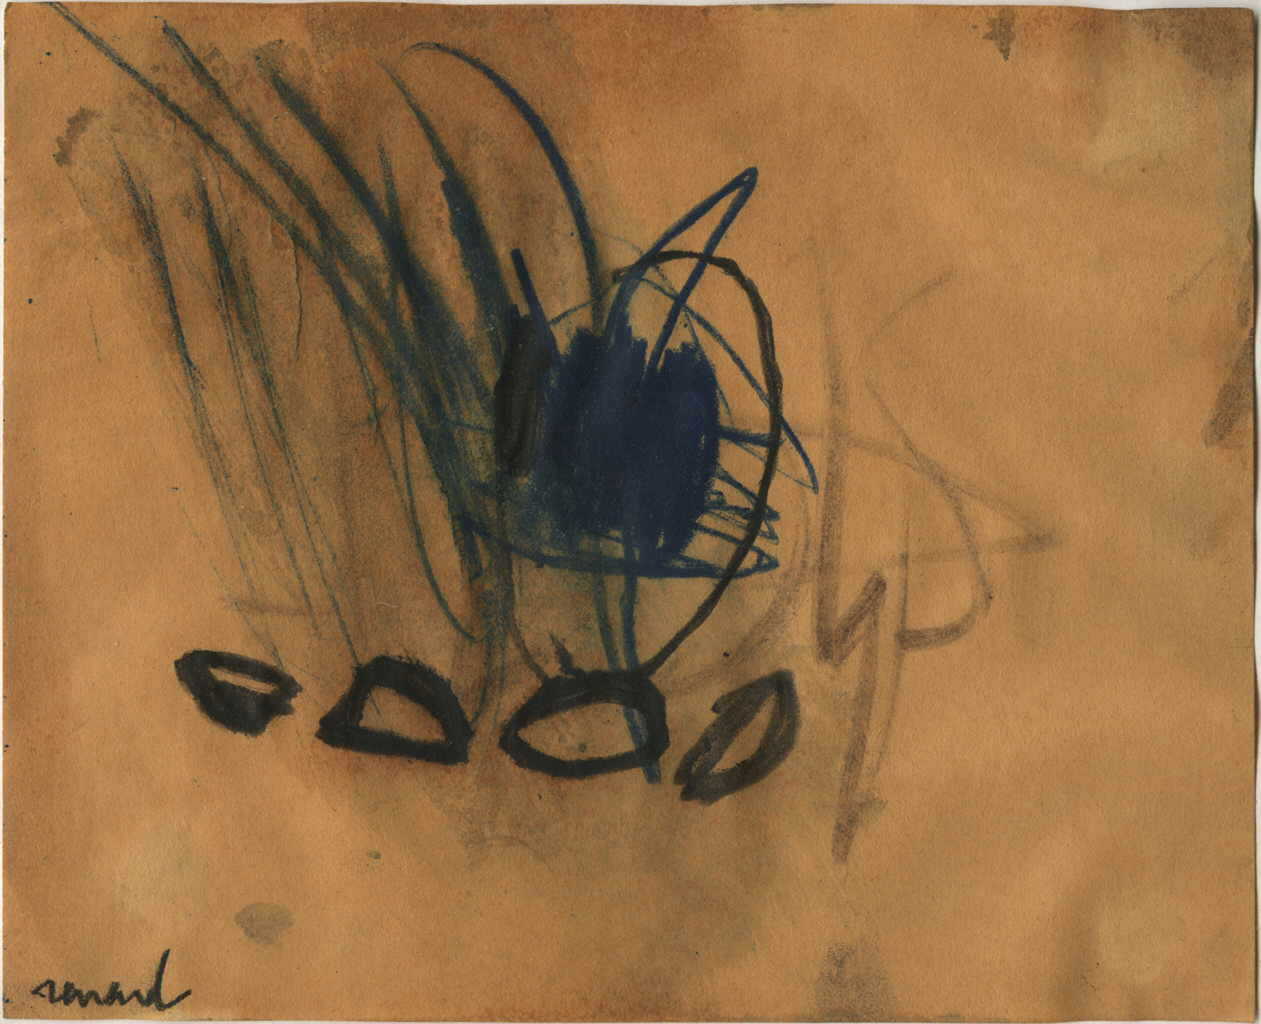 Renard Emmanuelle 
Ohne Titel, 1990
Mischtechnik / Papier
17 x 21 cm